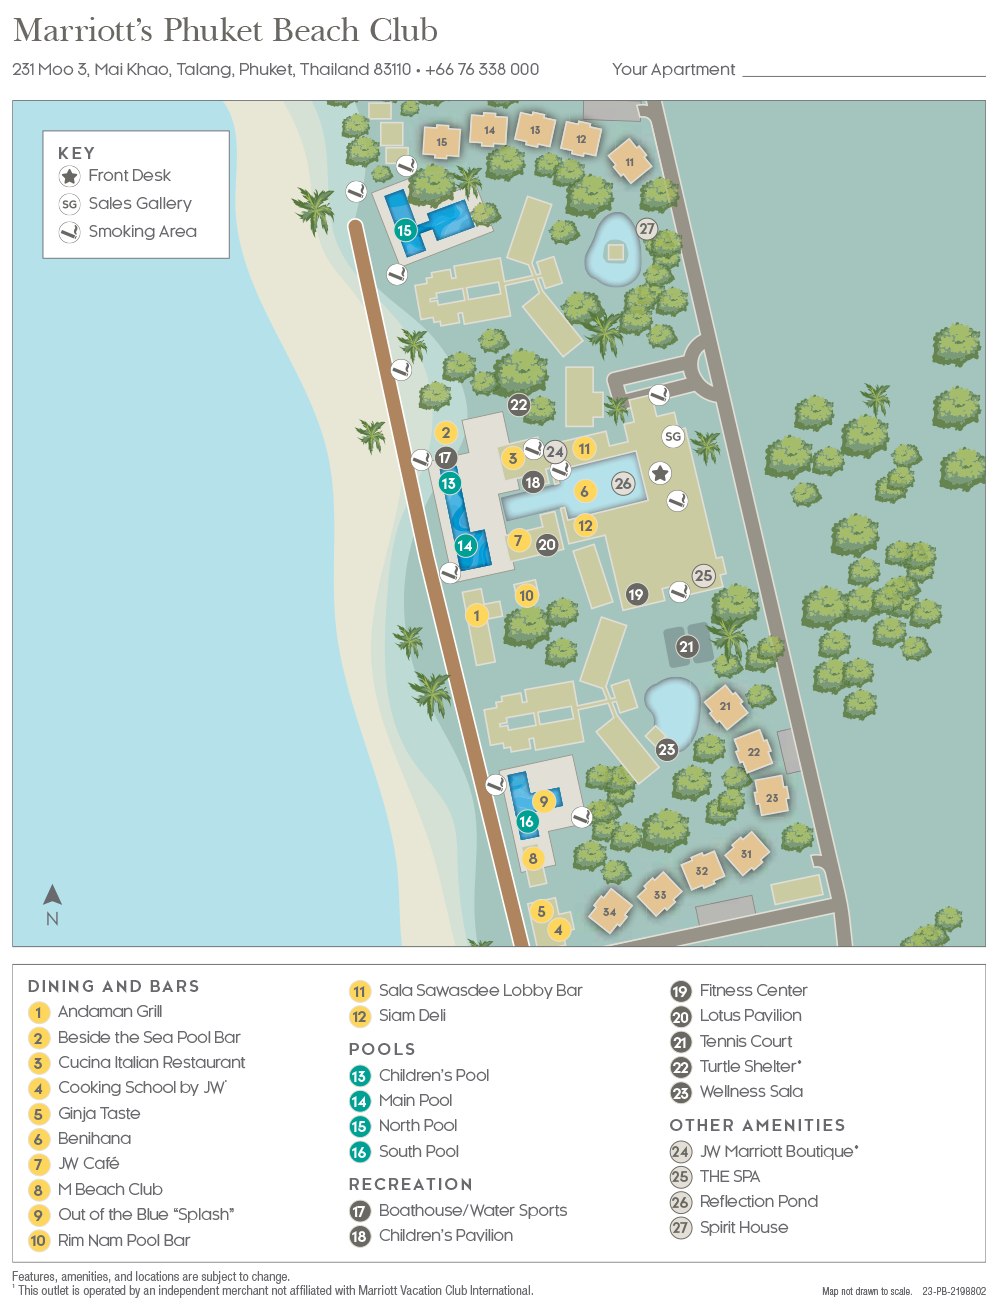 Marriott Phuket Beach Club Resort Map